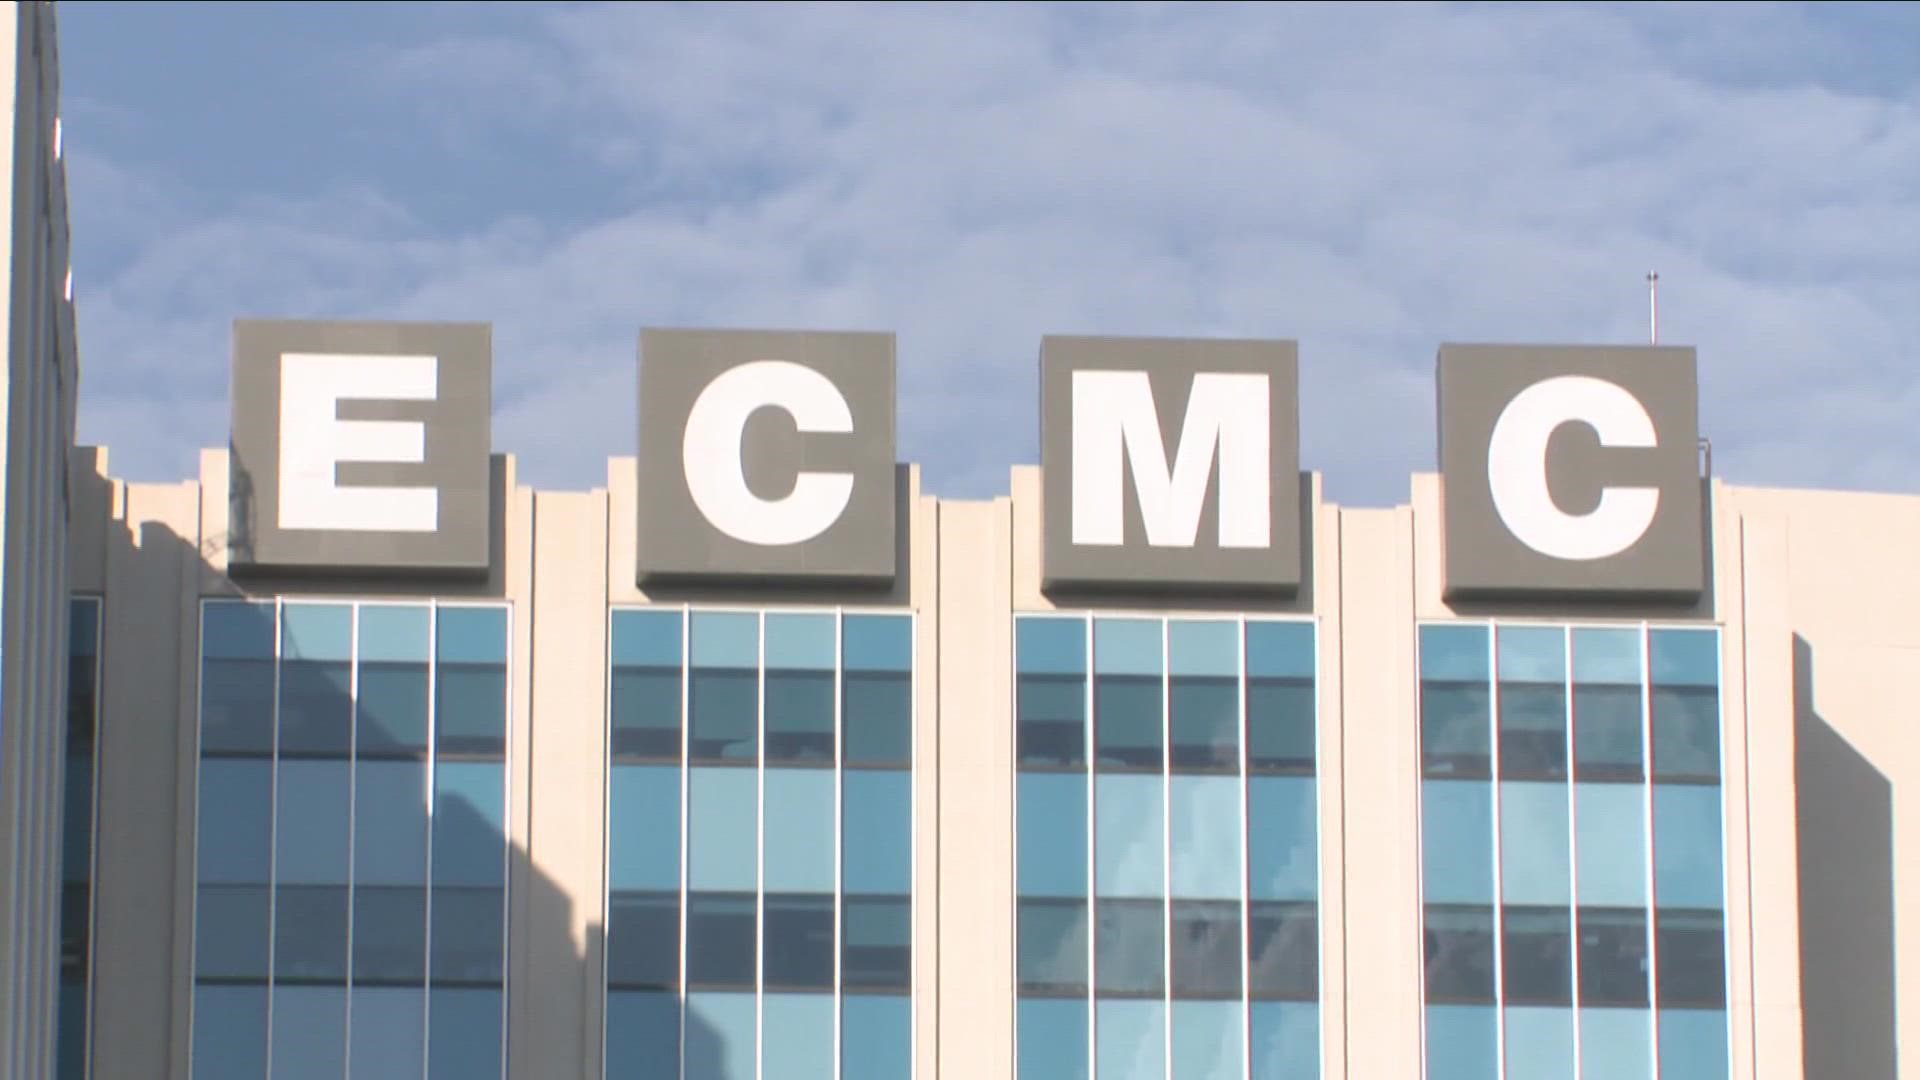 ECMC has more than 1,300 nurses.